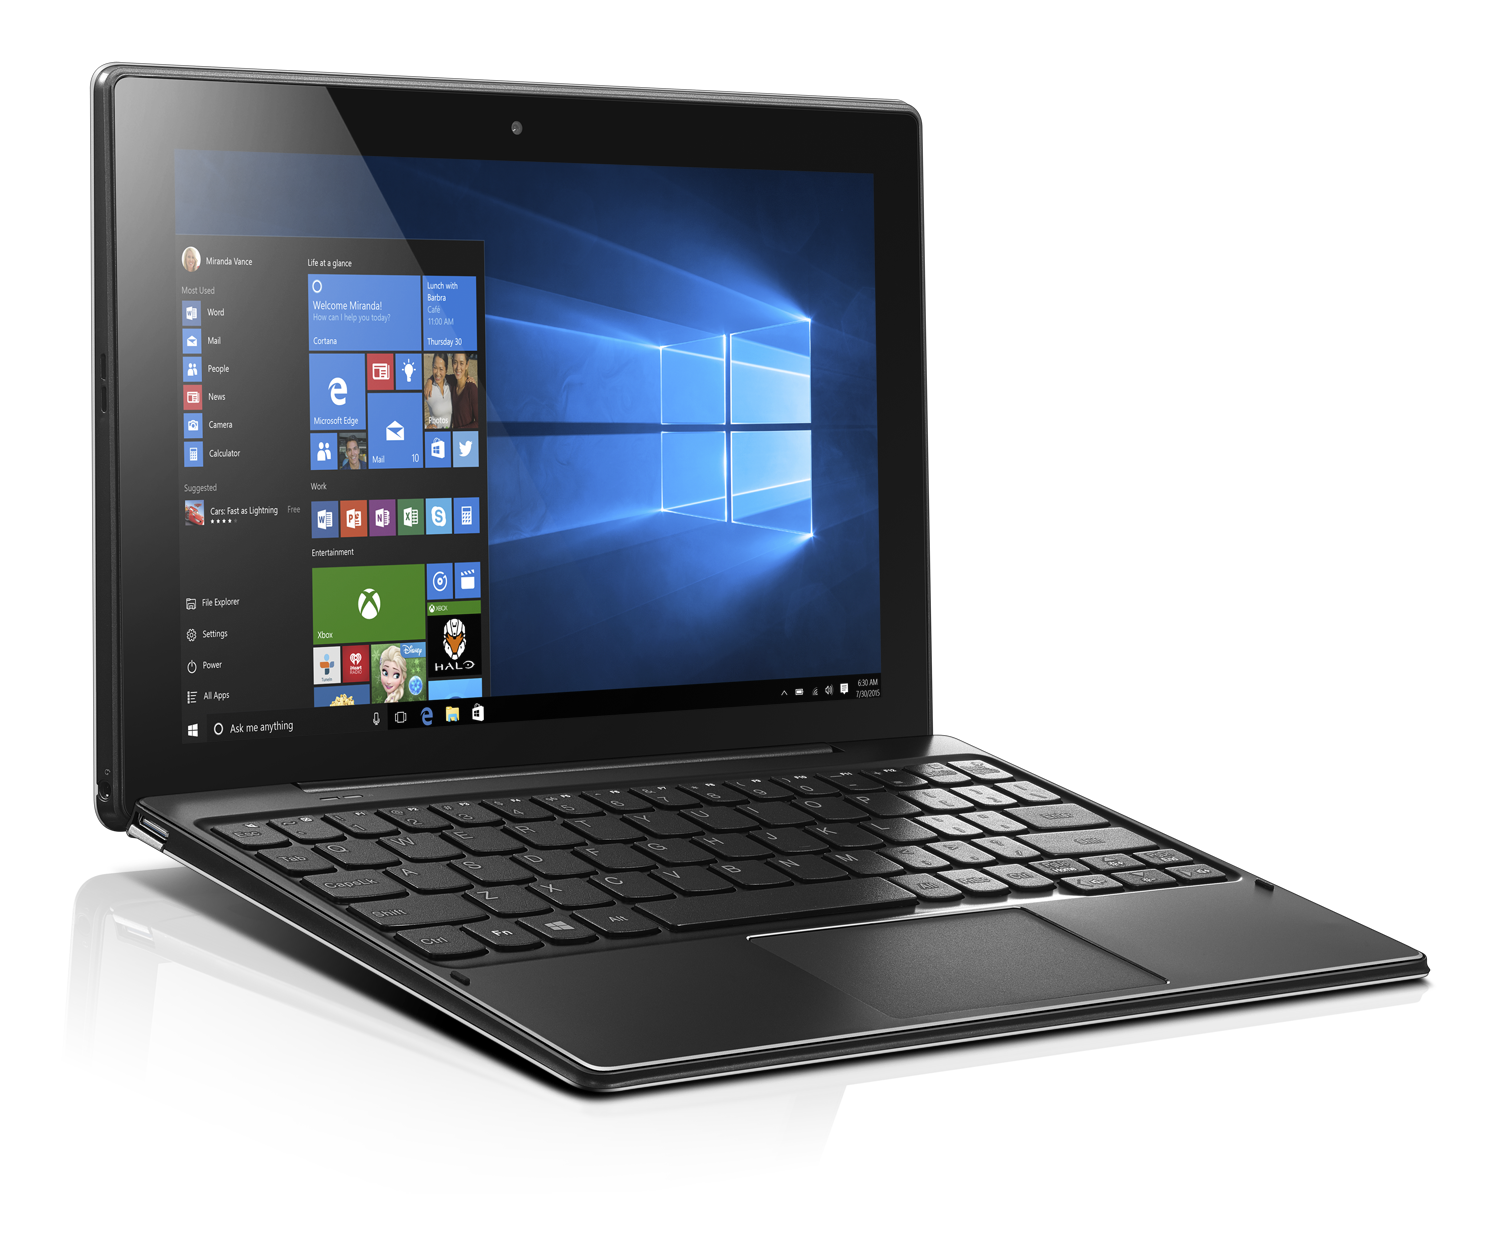 miix 310 05 w10 laptop mini start Lenovo Ideapad MiiX 310 สนุกกับการทำงานและใช้ชีวิตไปกับ เลอโนโว ไอเดียแพด มิกซ์ 310 ในราคาที่คุณสัมผัสได้